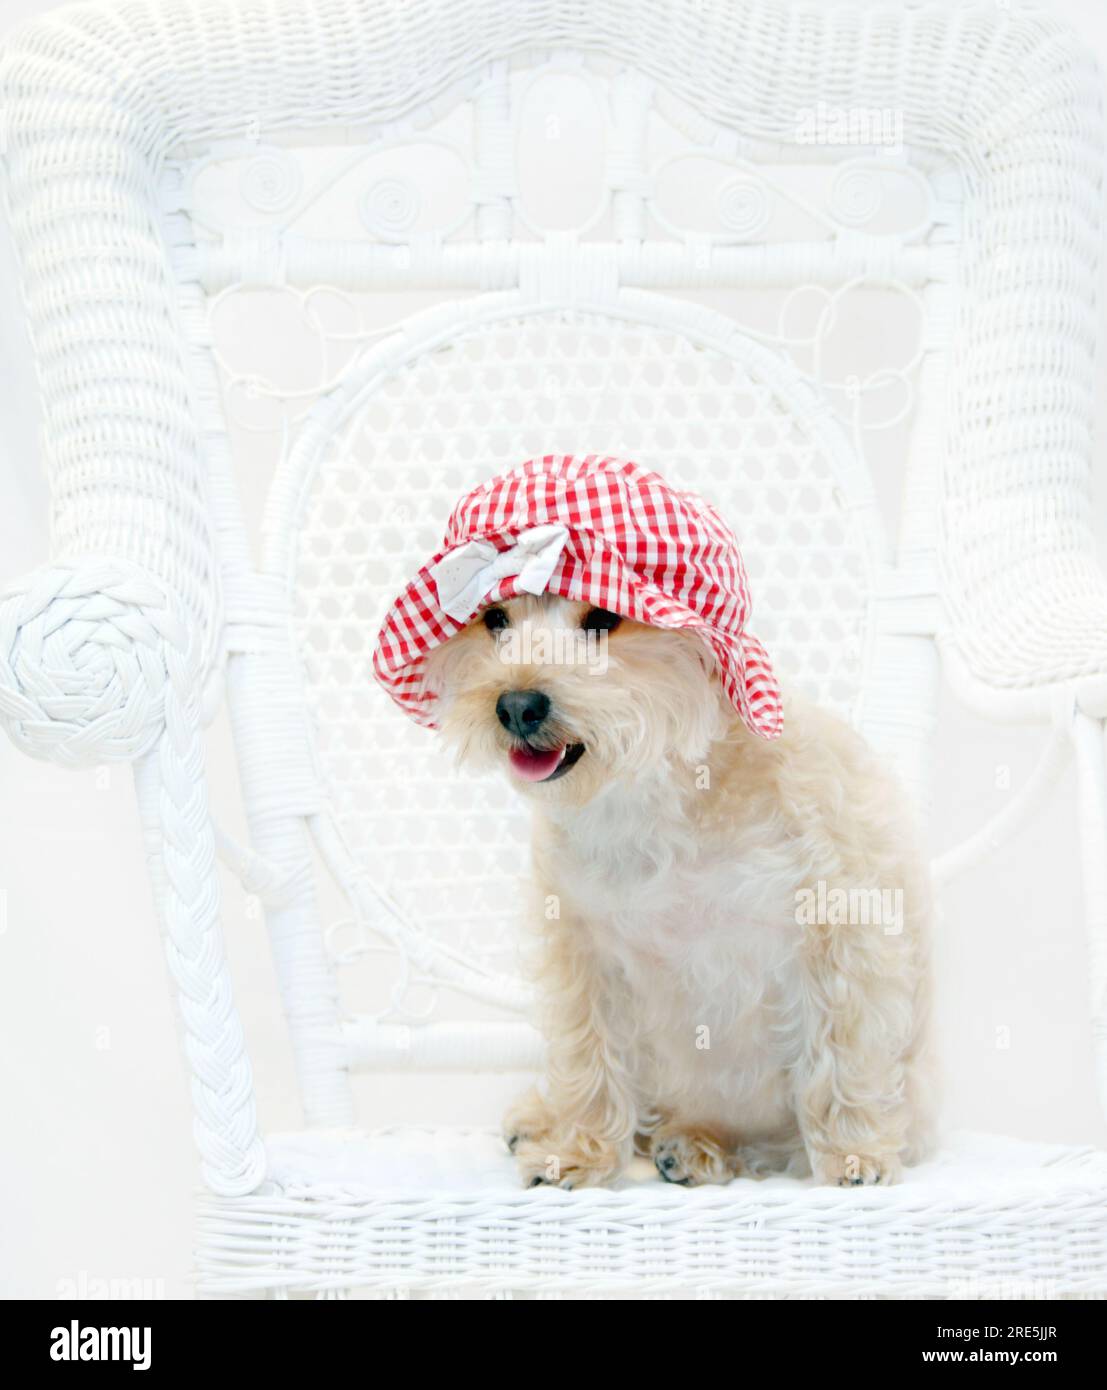 Der rote Gingham-Hut sitzt auf dem süßen Silkypoo-Hund. Der Hund sitzt auf einem weißen Korbstuhl. Stockfoto